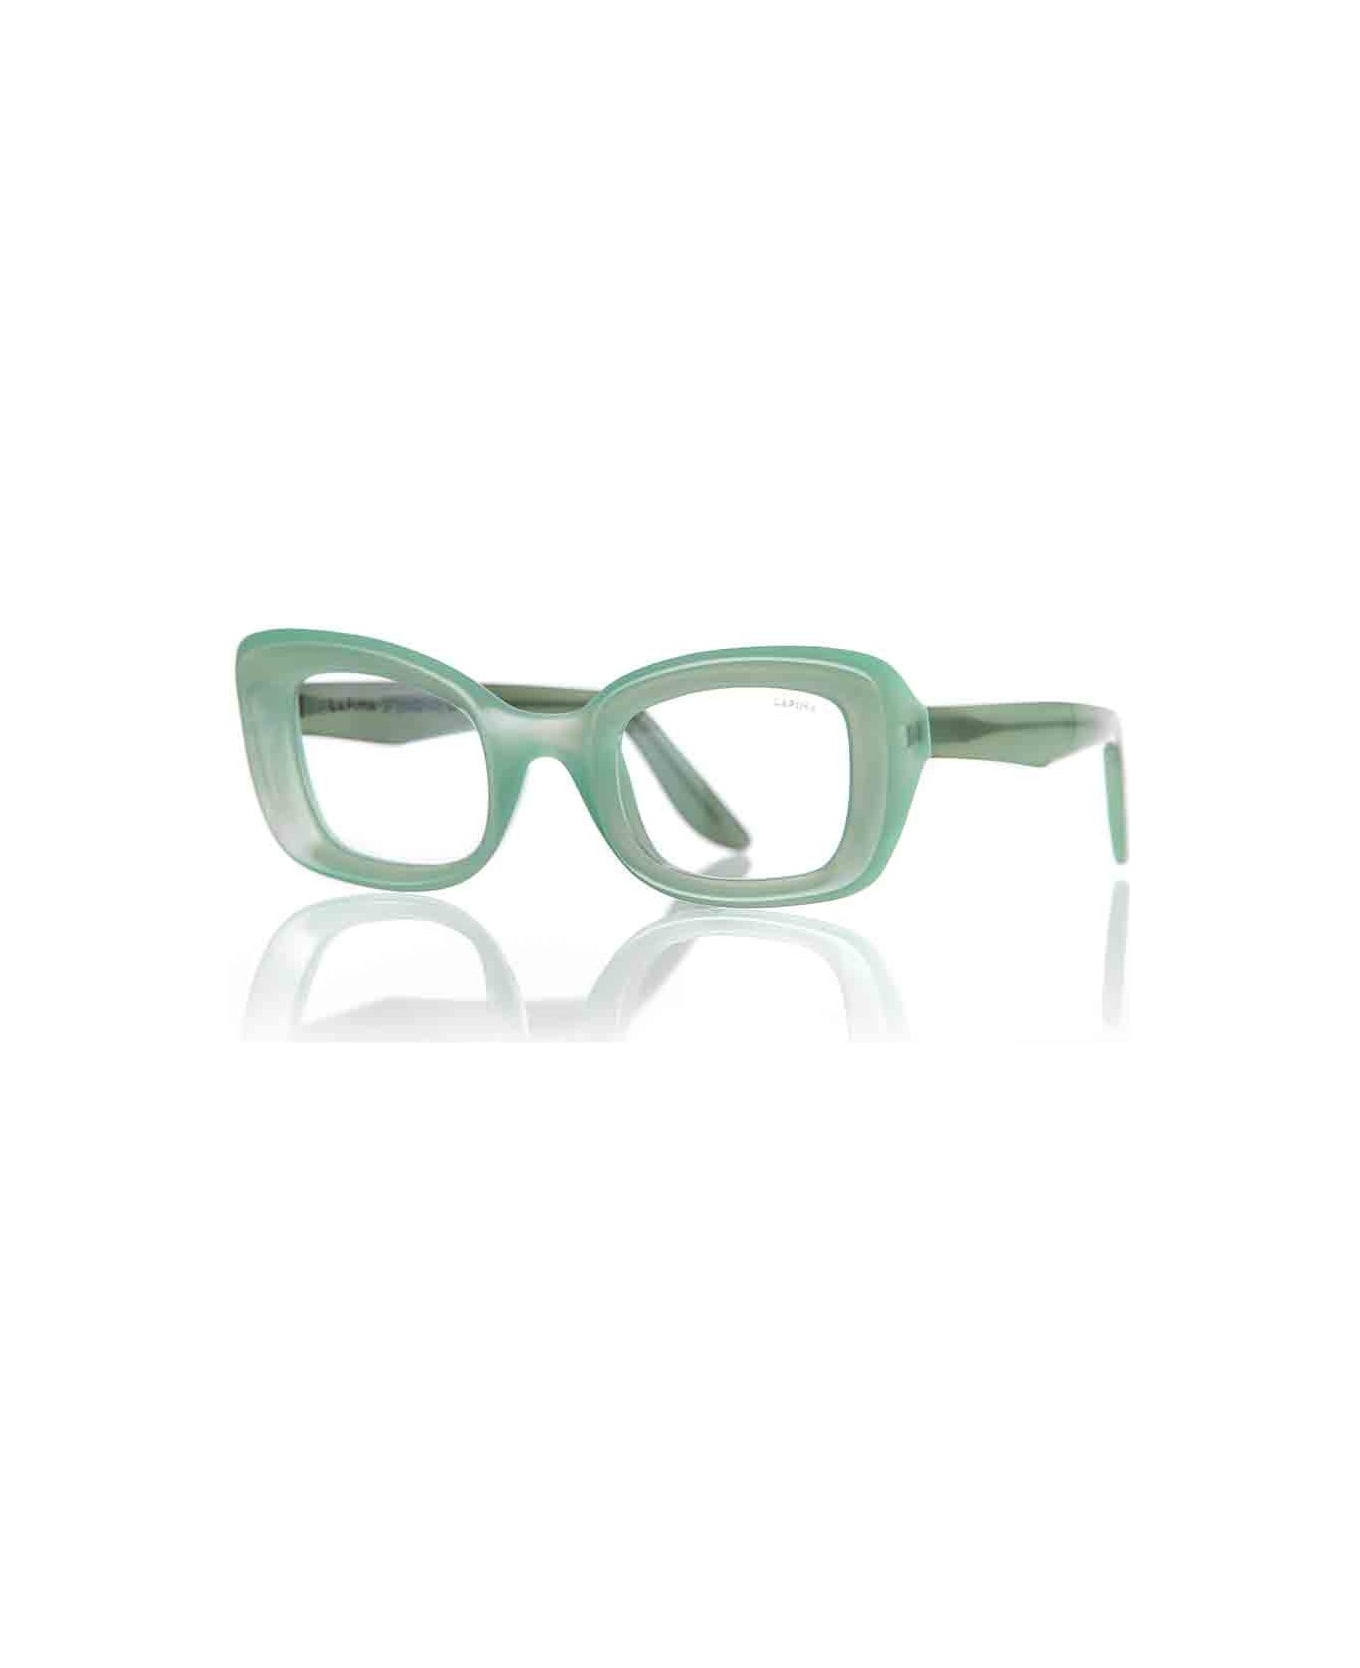 Lapima Eyewear - Verde アイウェア